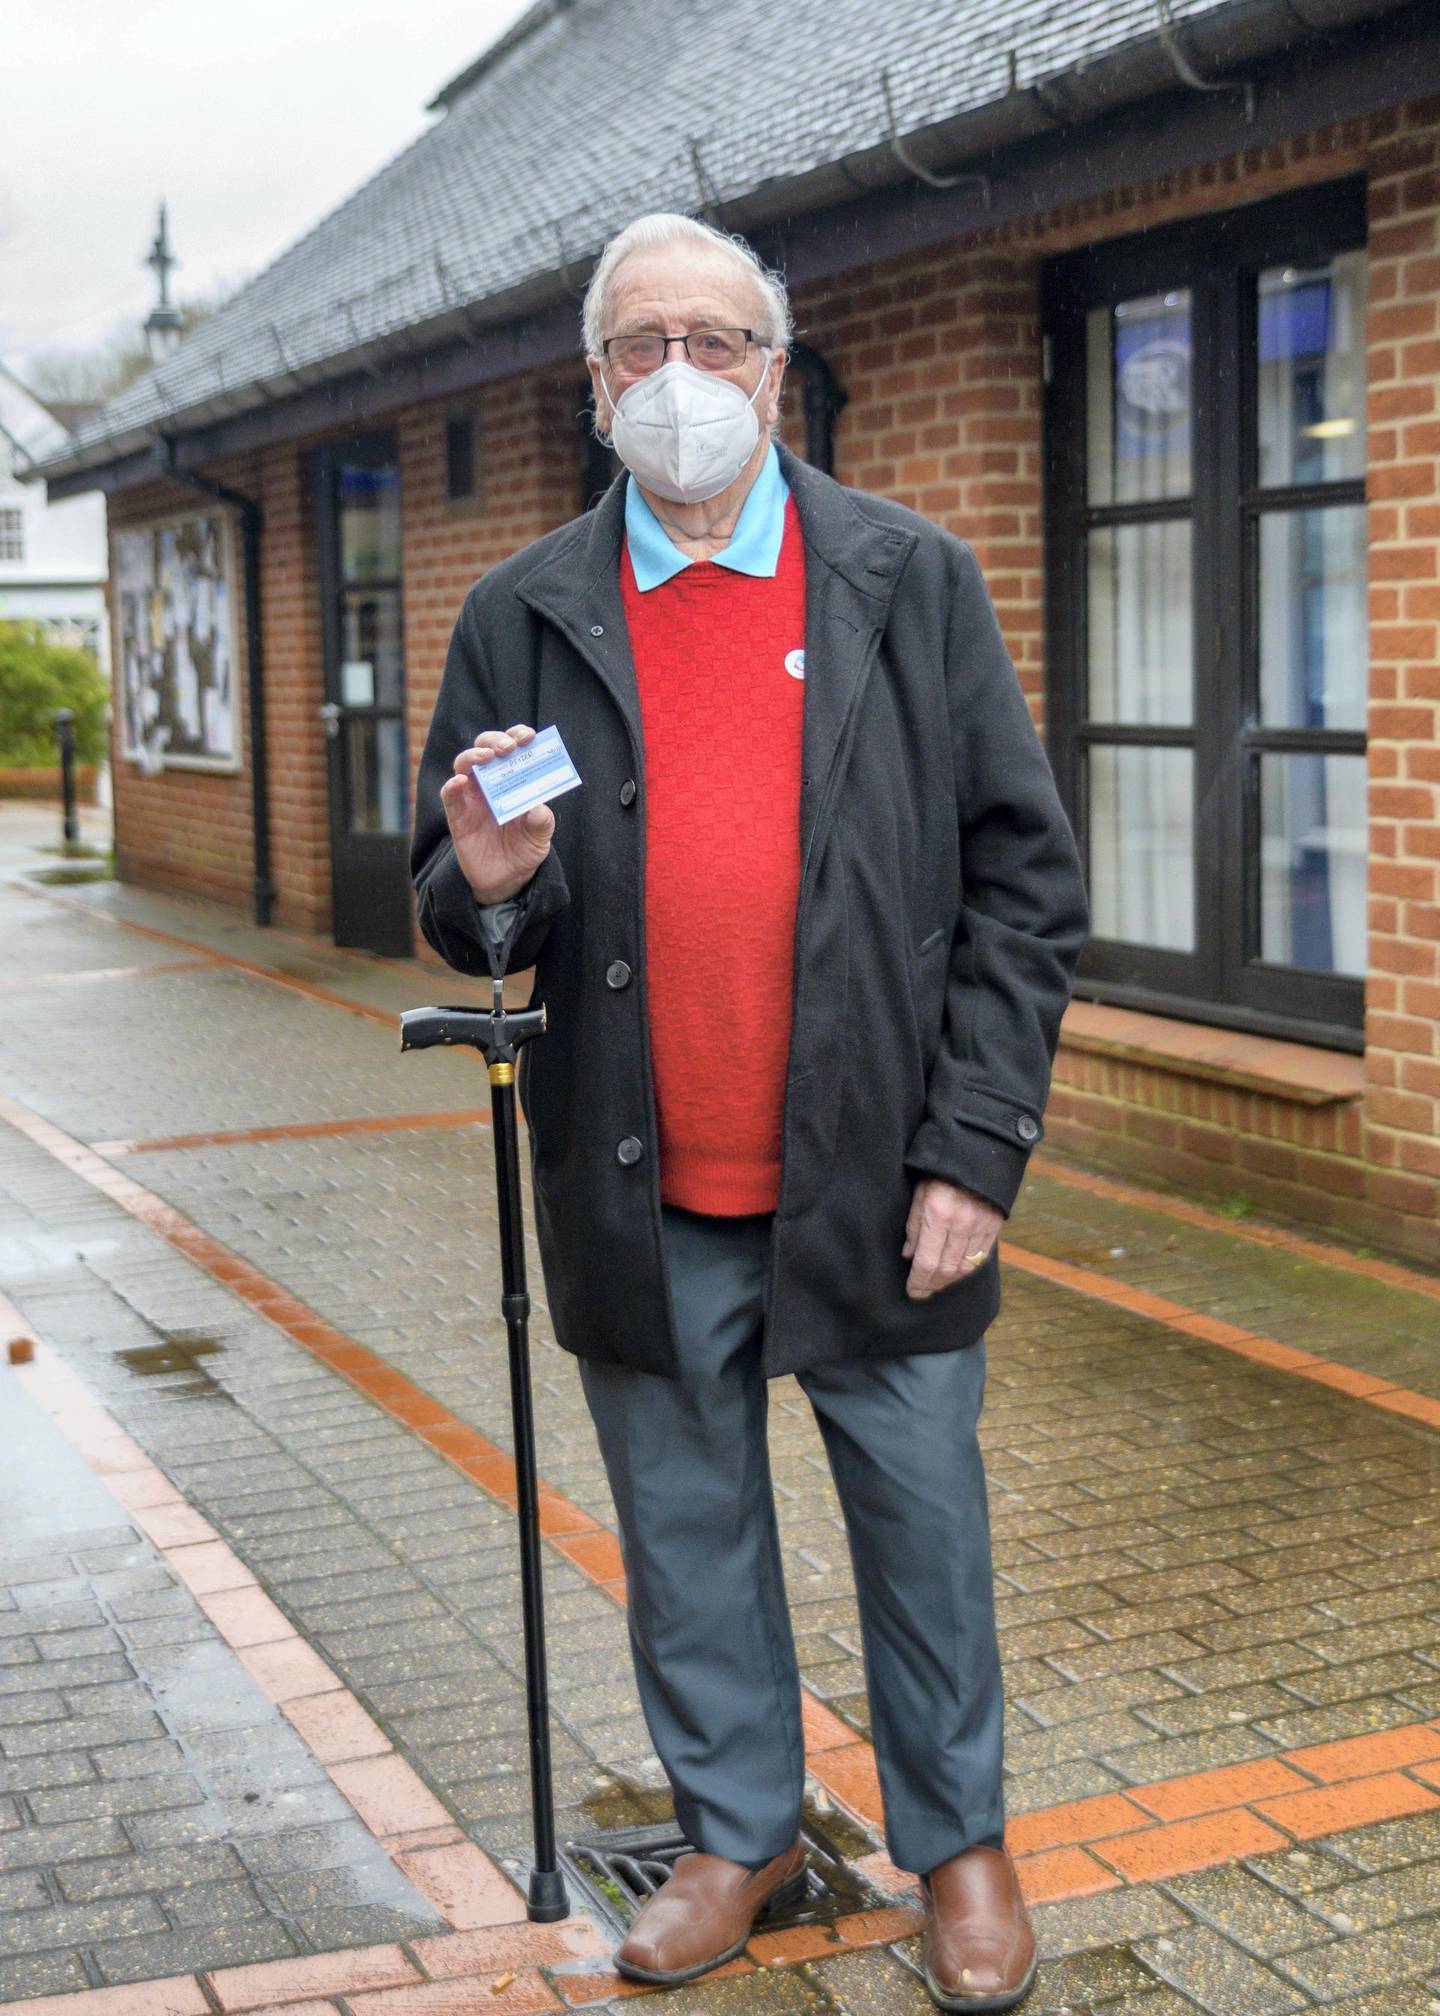 Cranleigh resident Derek Johnson, 87, said he felt 'relieved' to receive the vaccine on Thursday morning. Martin Bamford for The National